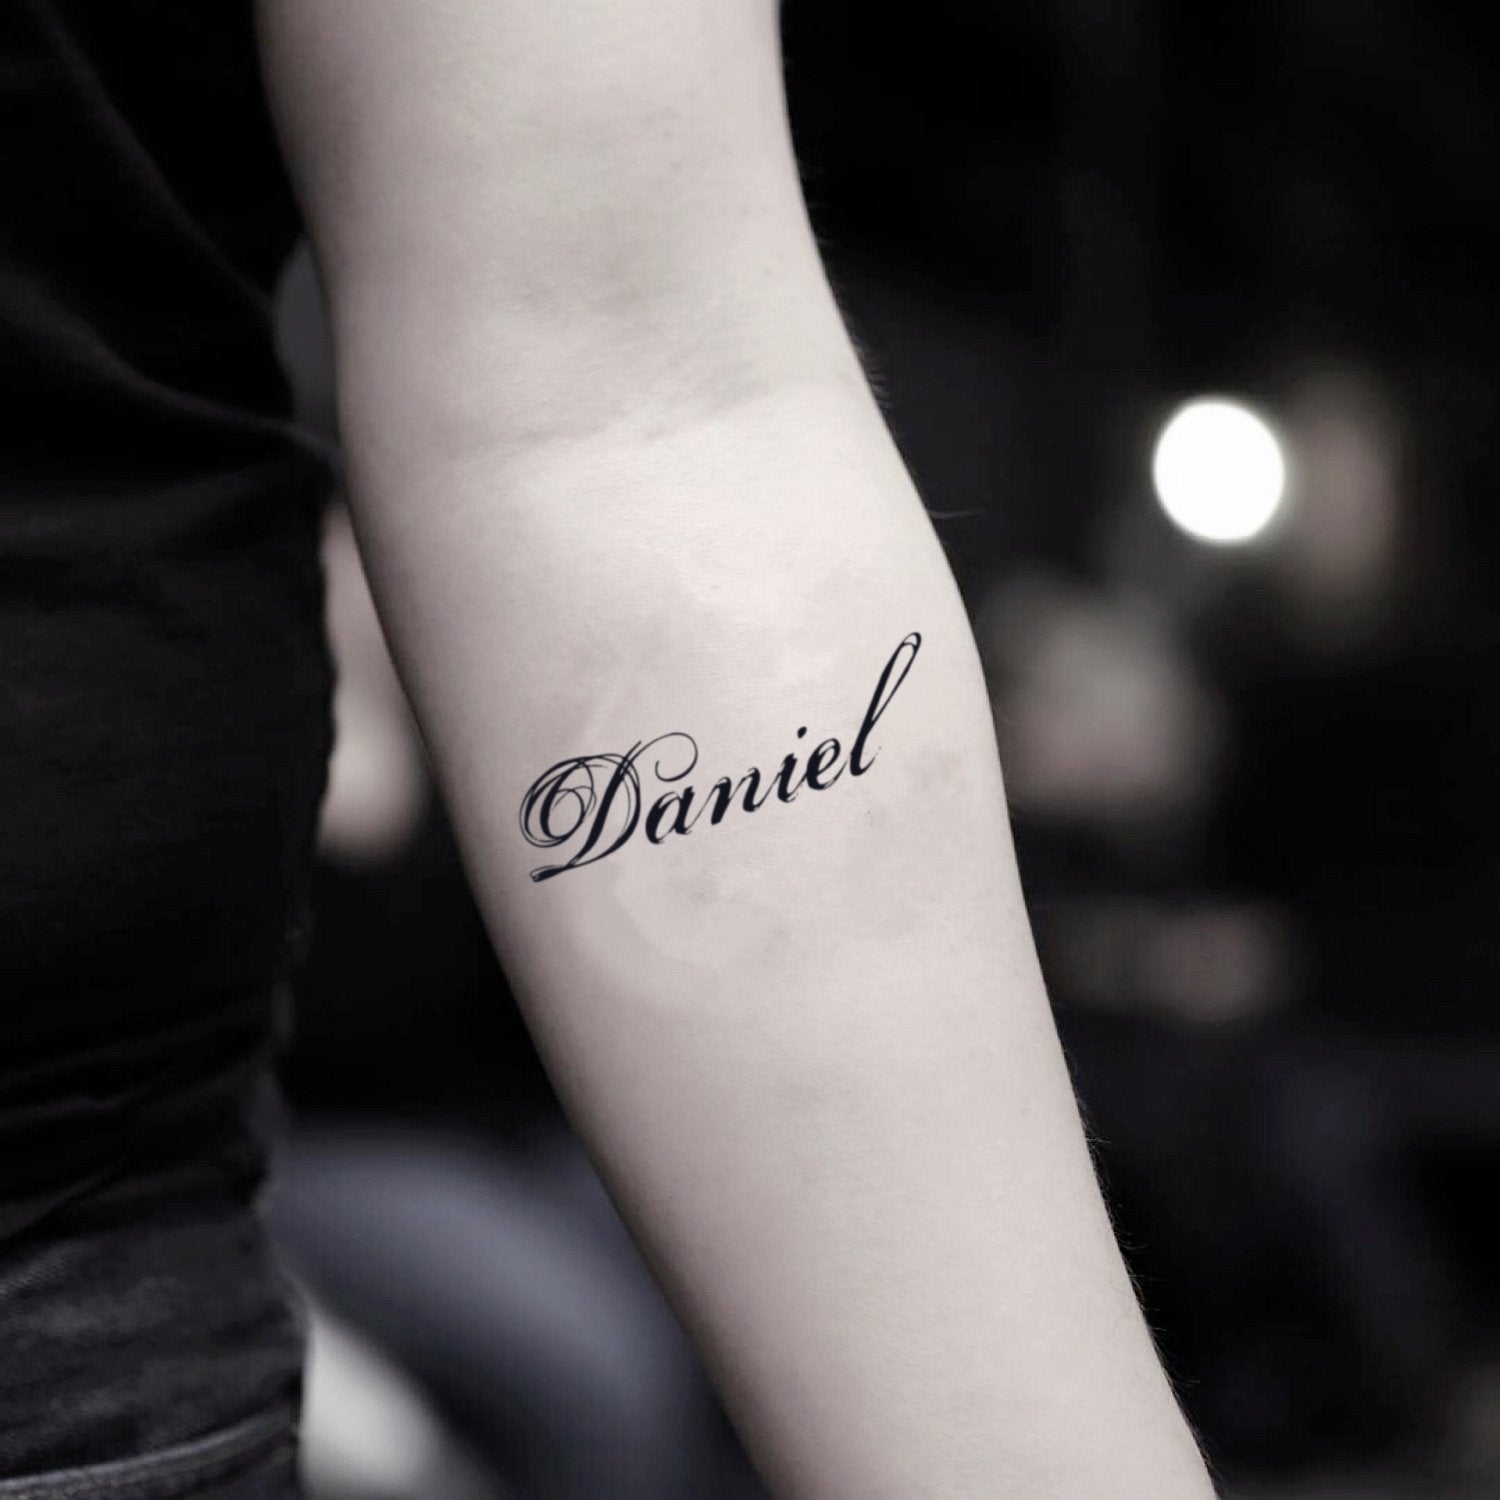 Stunning Tattoos by Daniel Silva